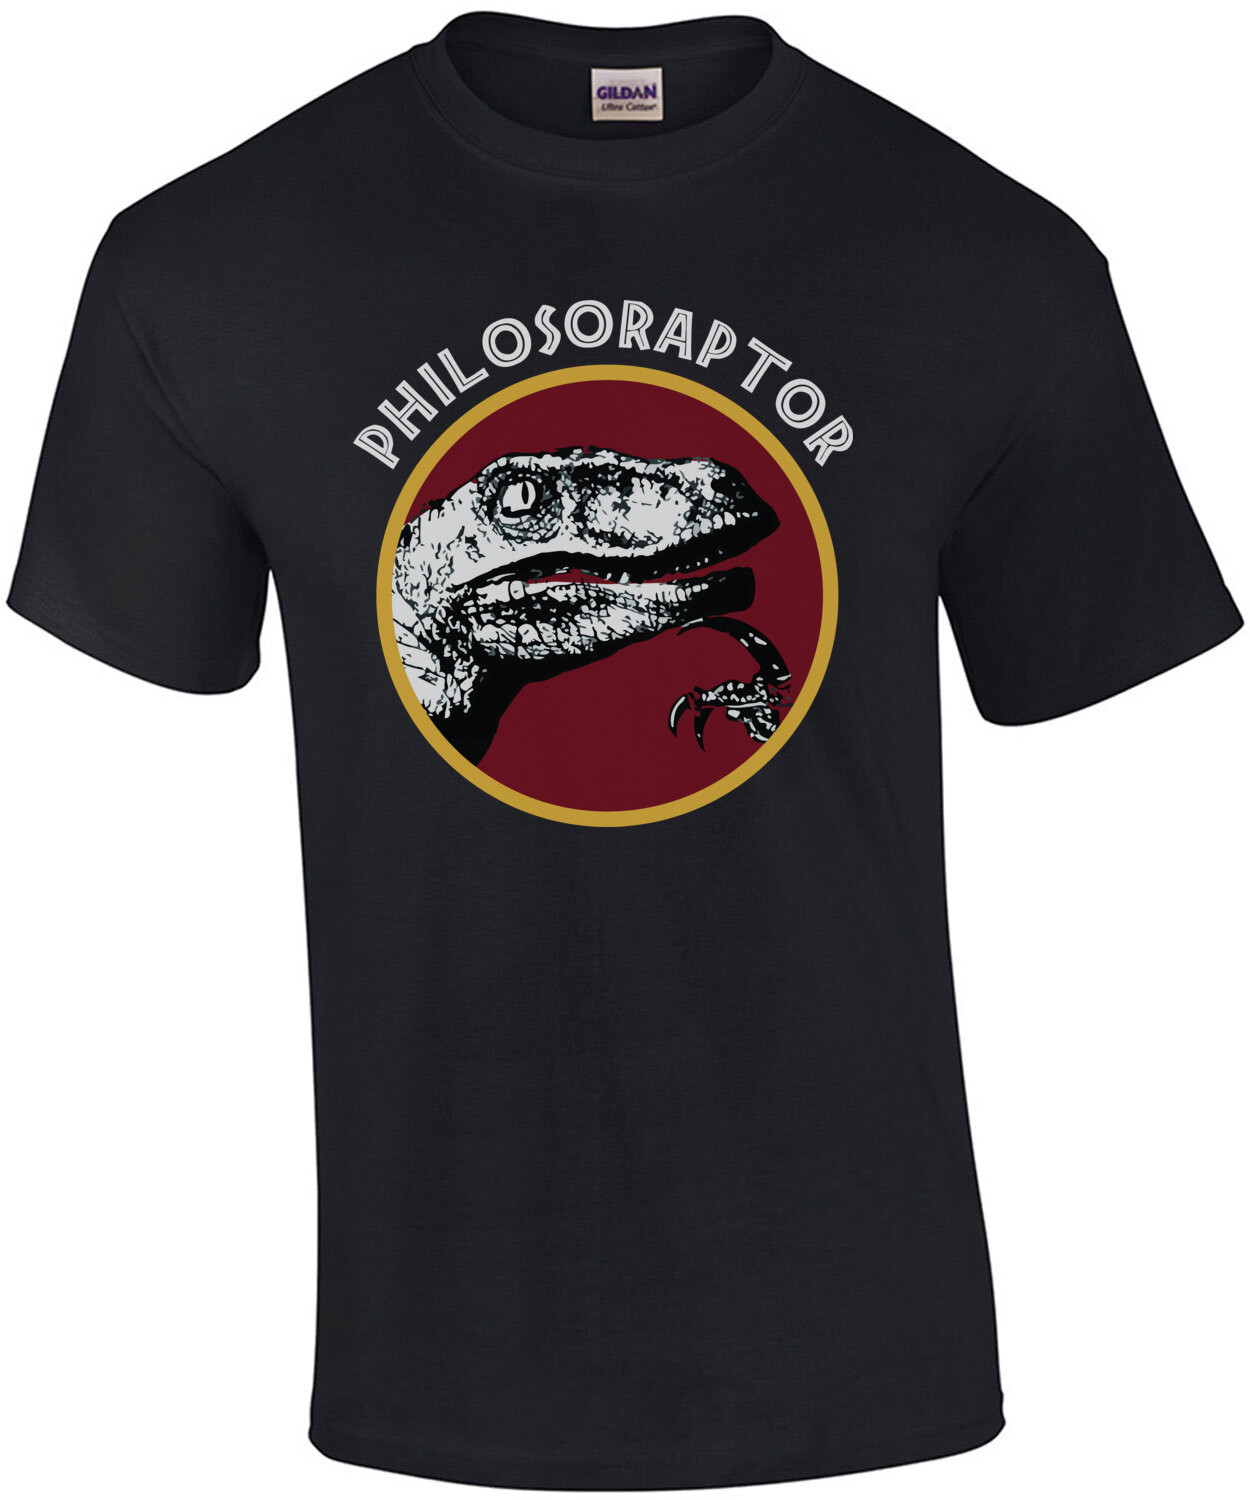 Philosoraptor - Funny Dinosaur T-Shirt